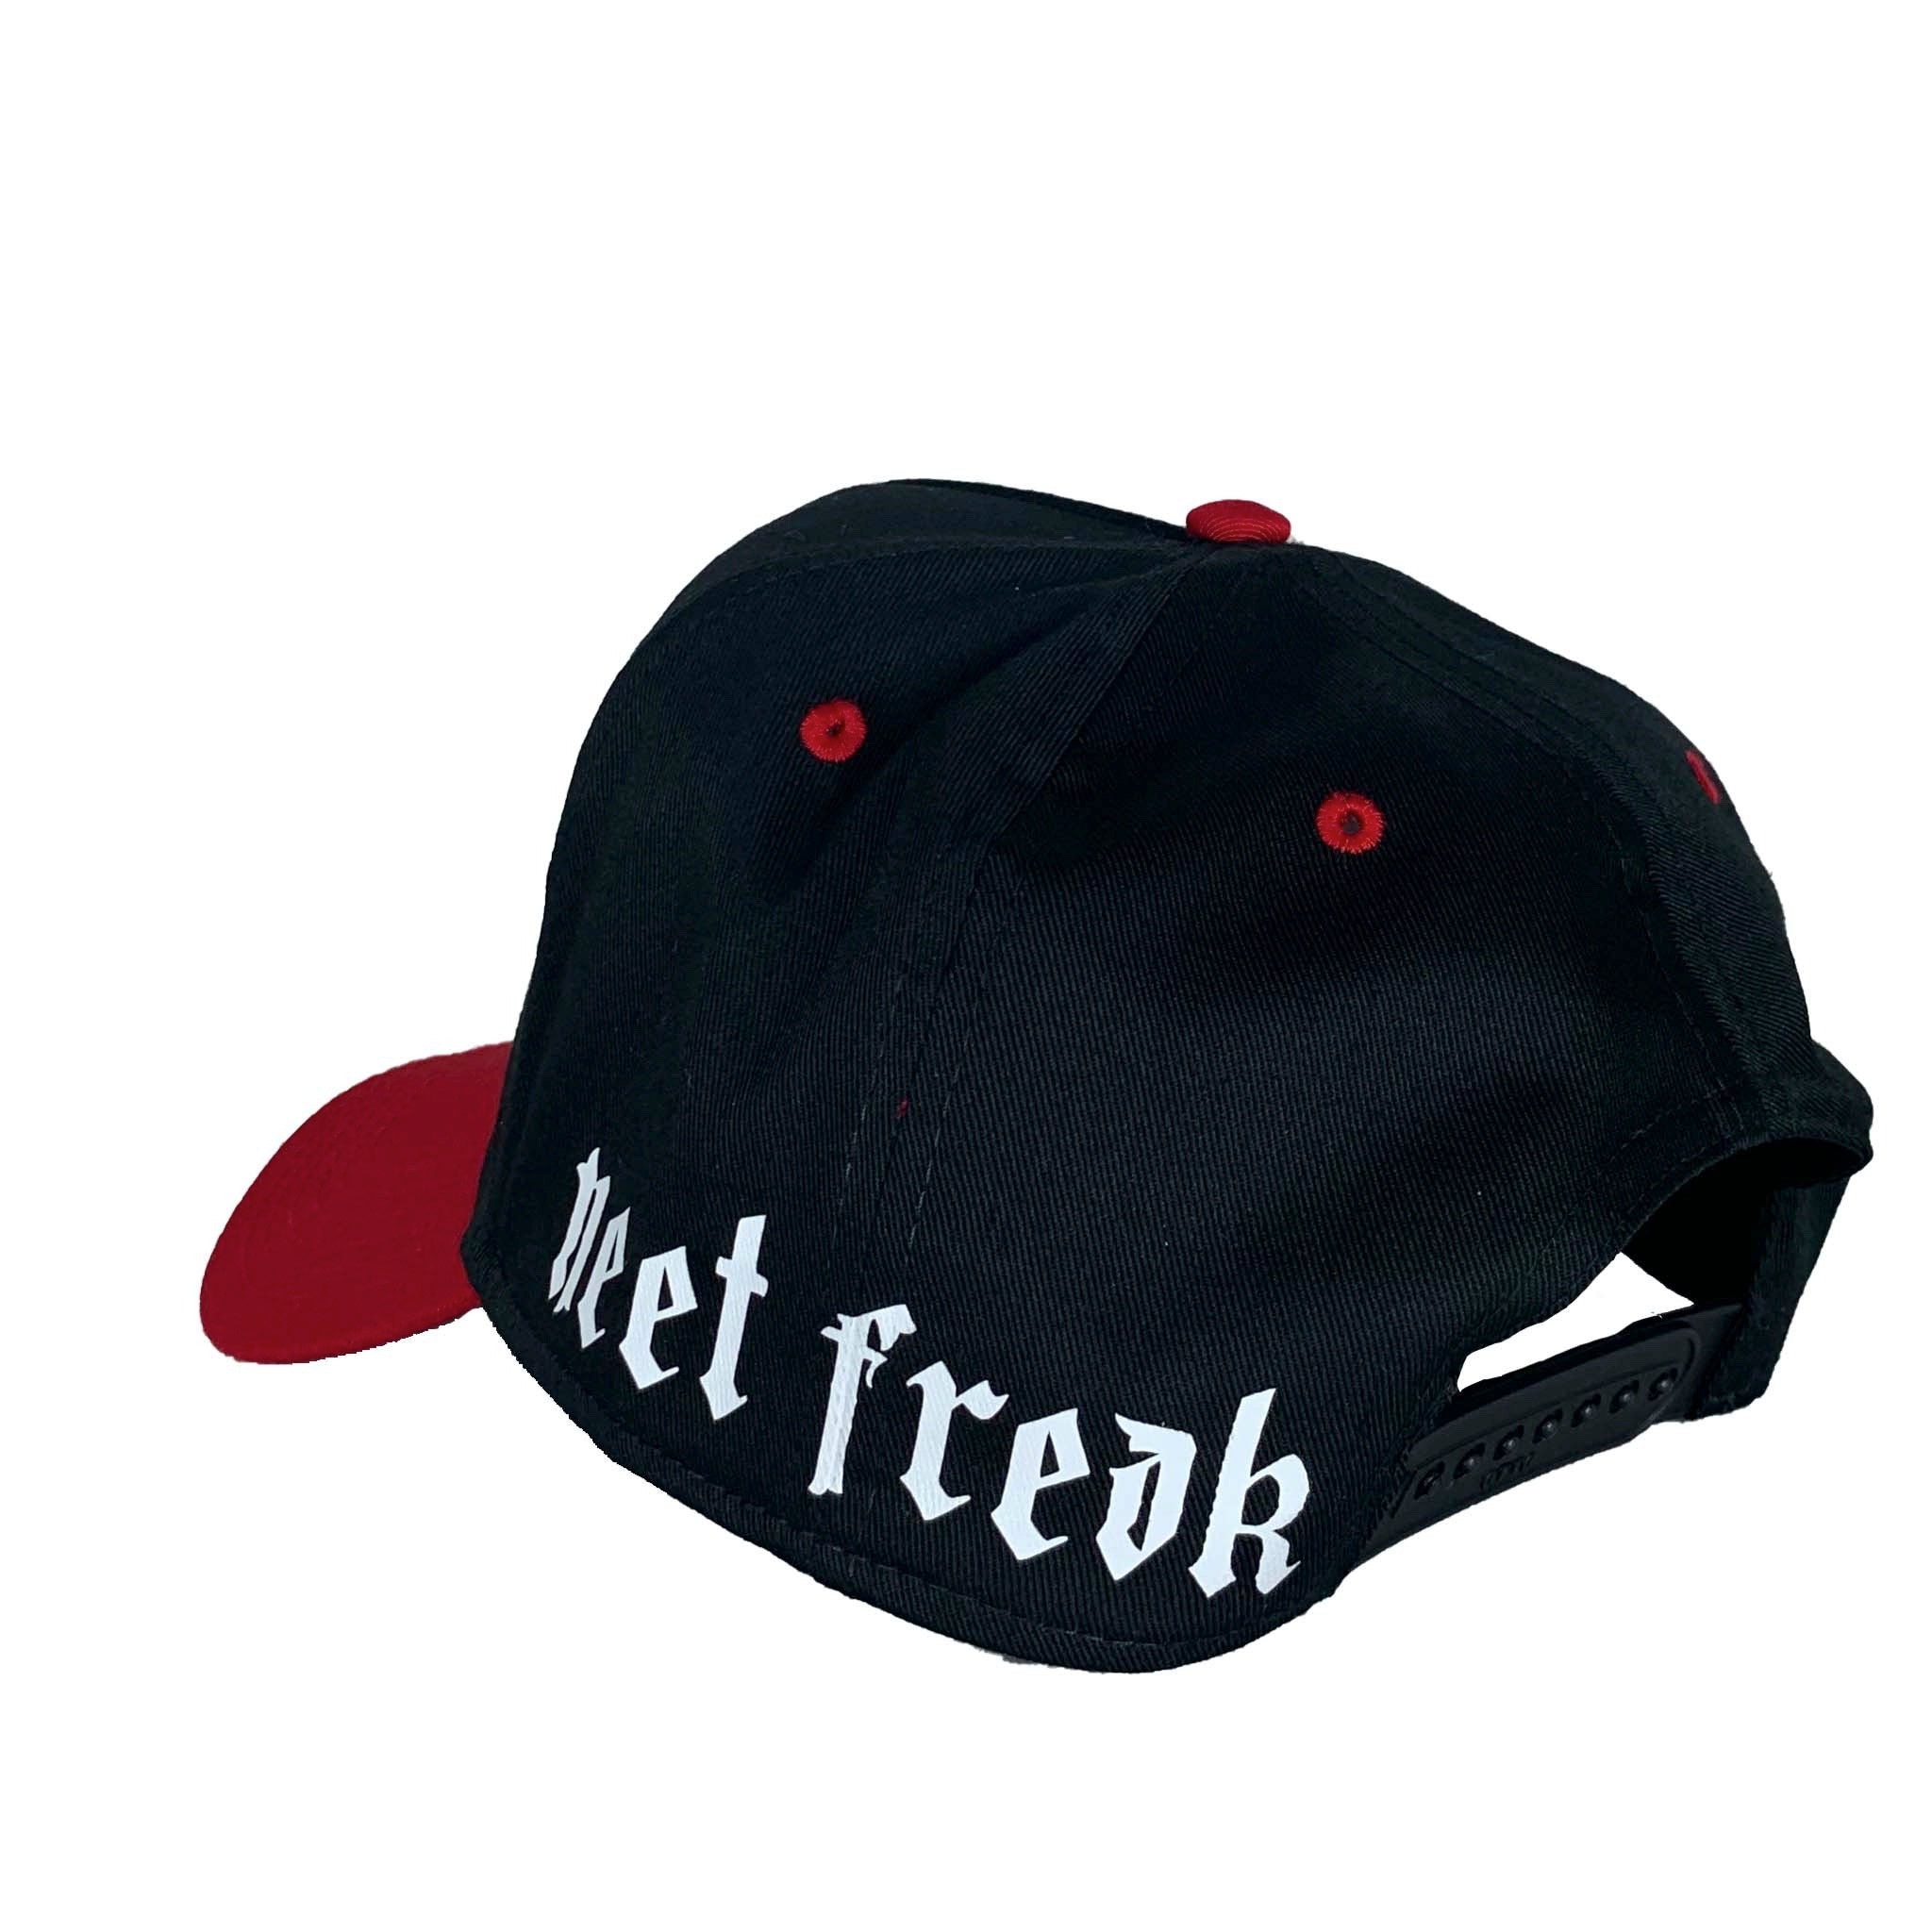 LUST TRUCKER HAT (Red/Blk)